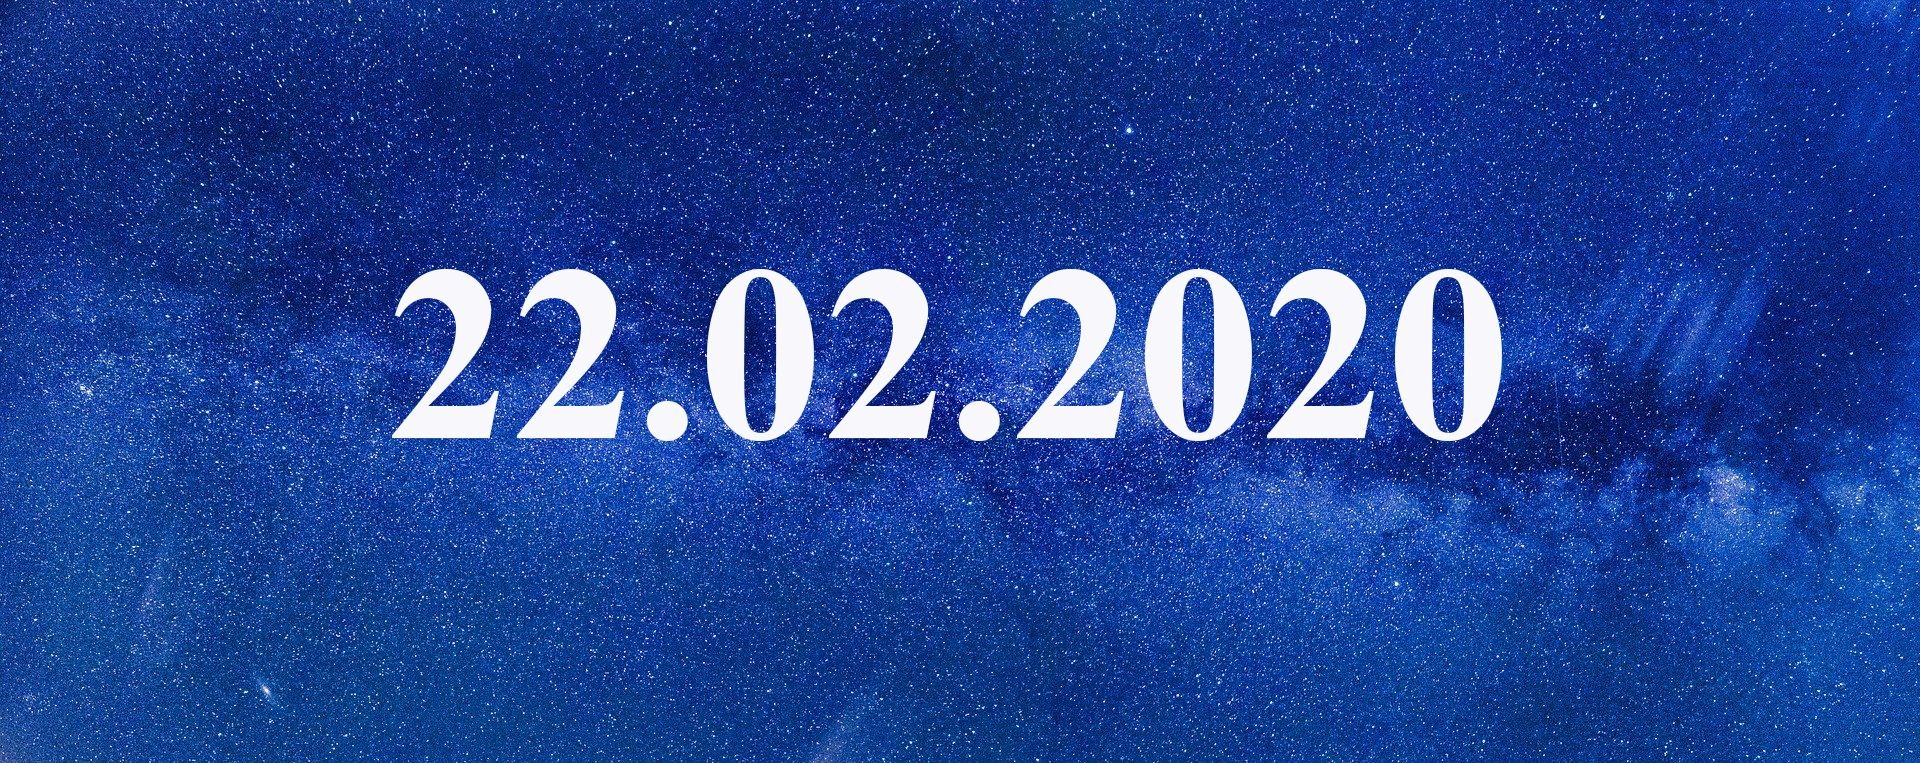 10 февраля 2020 день